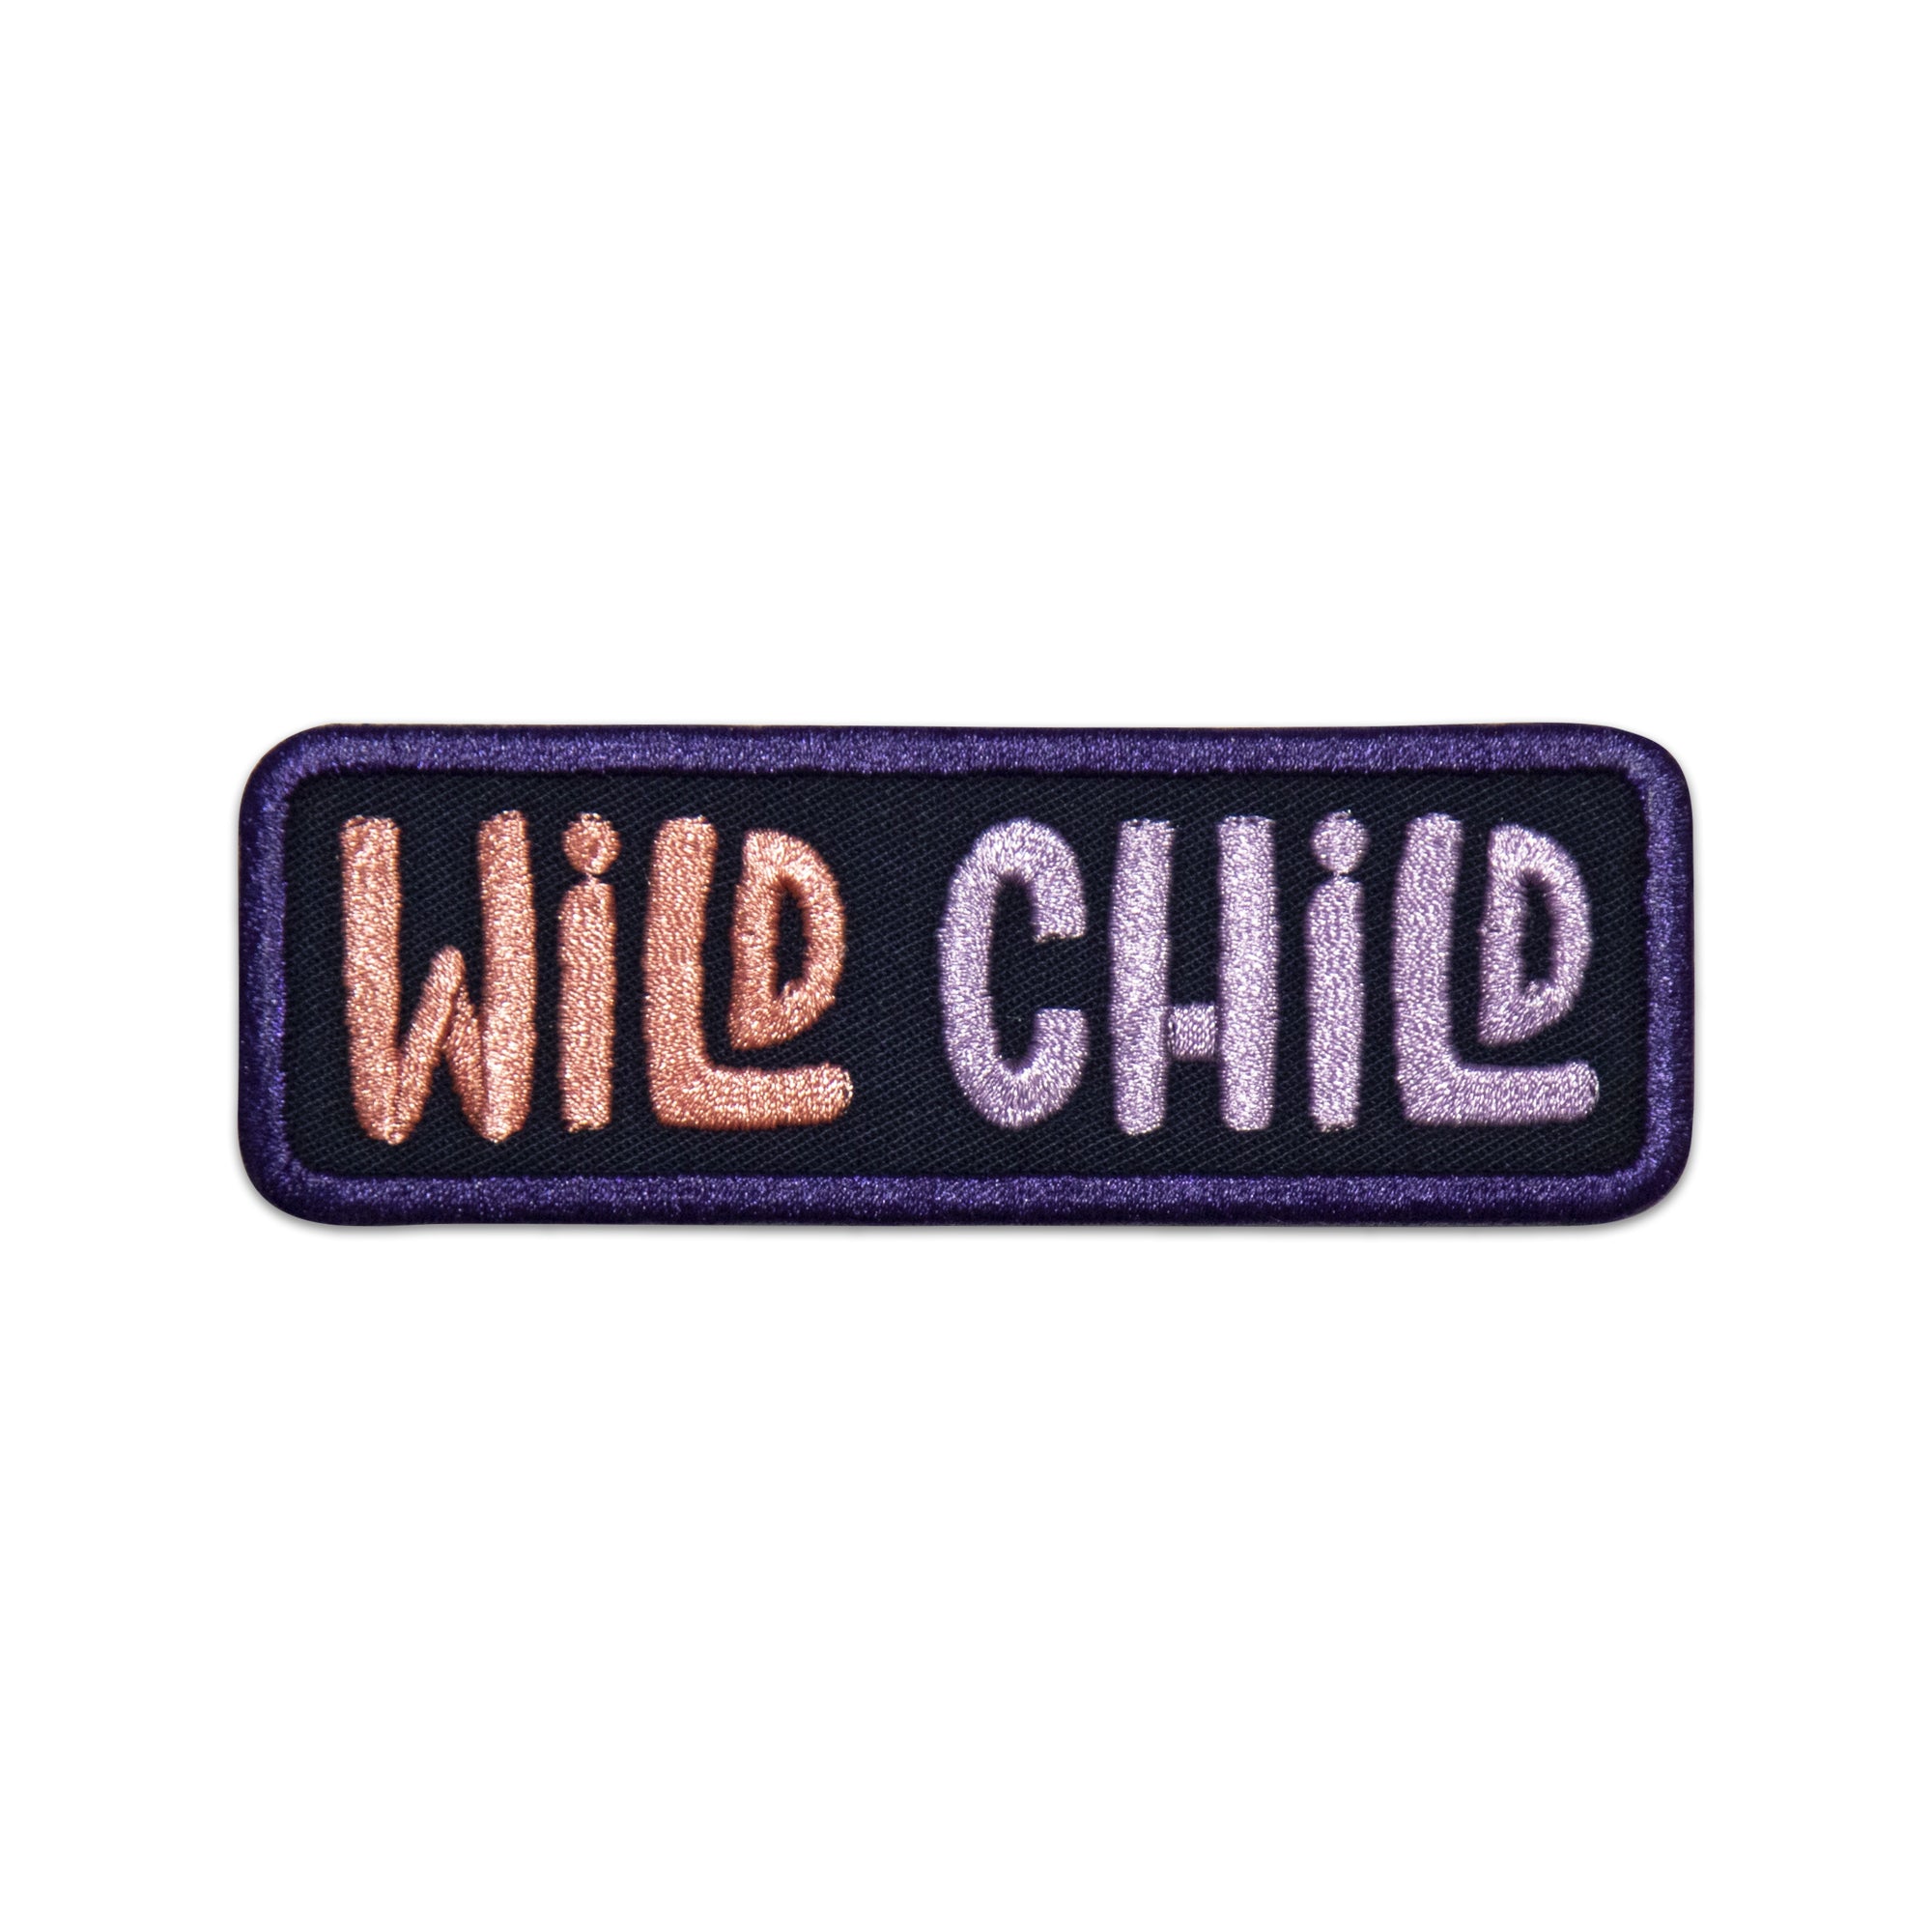 Wild Child Patch